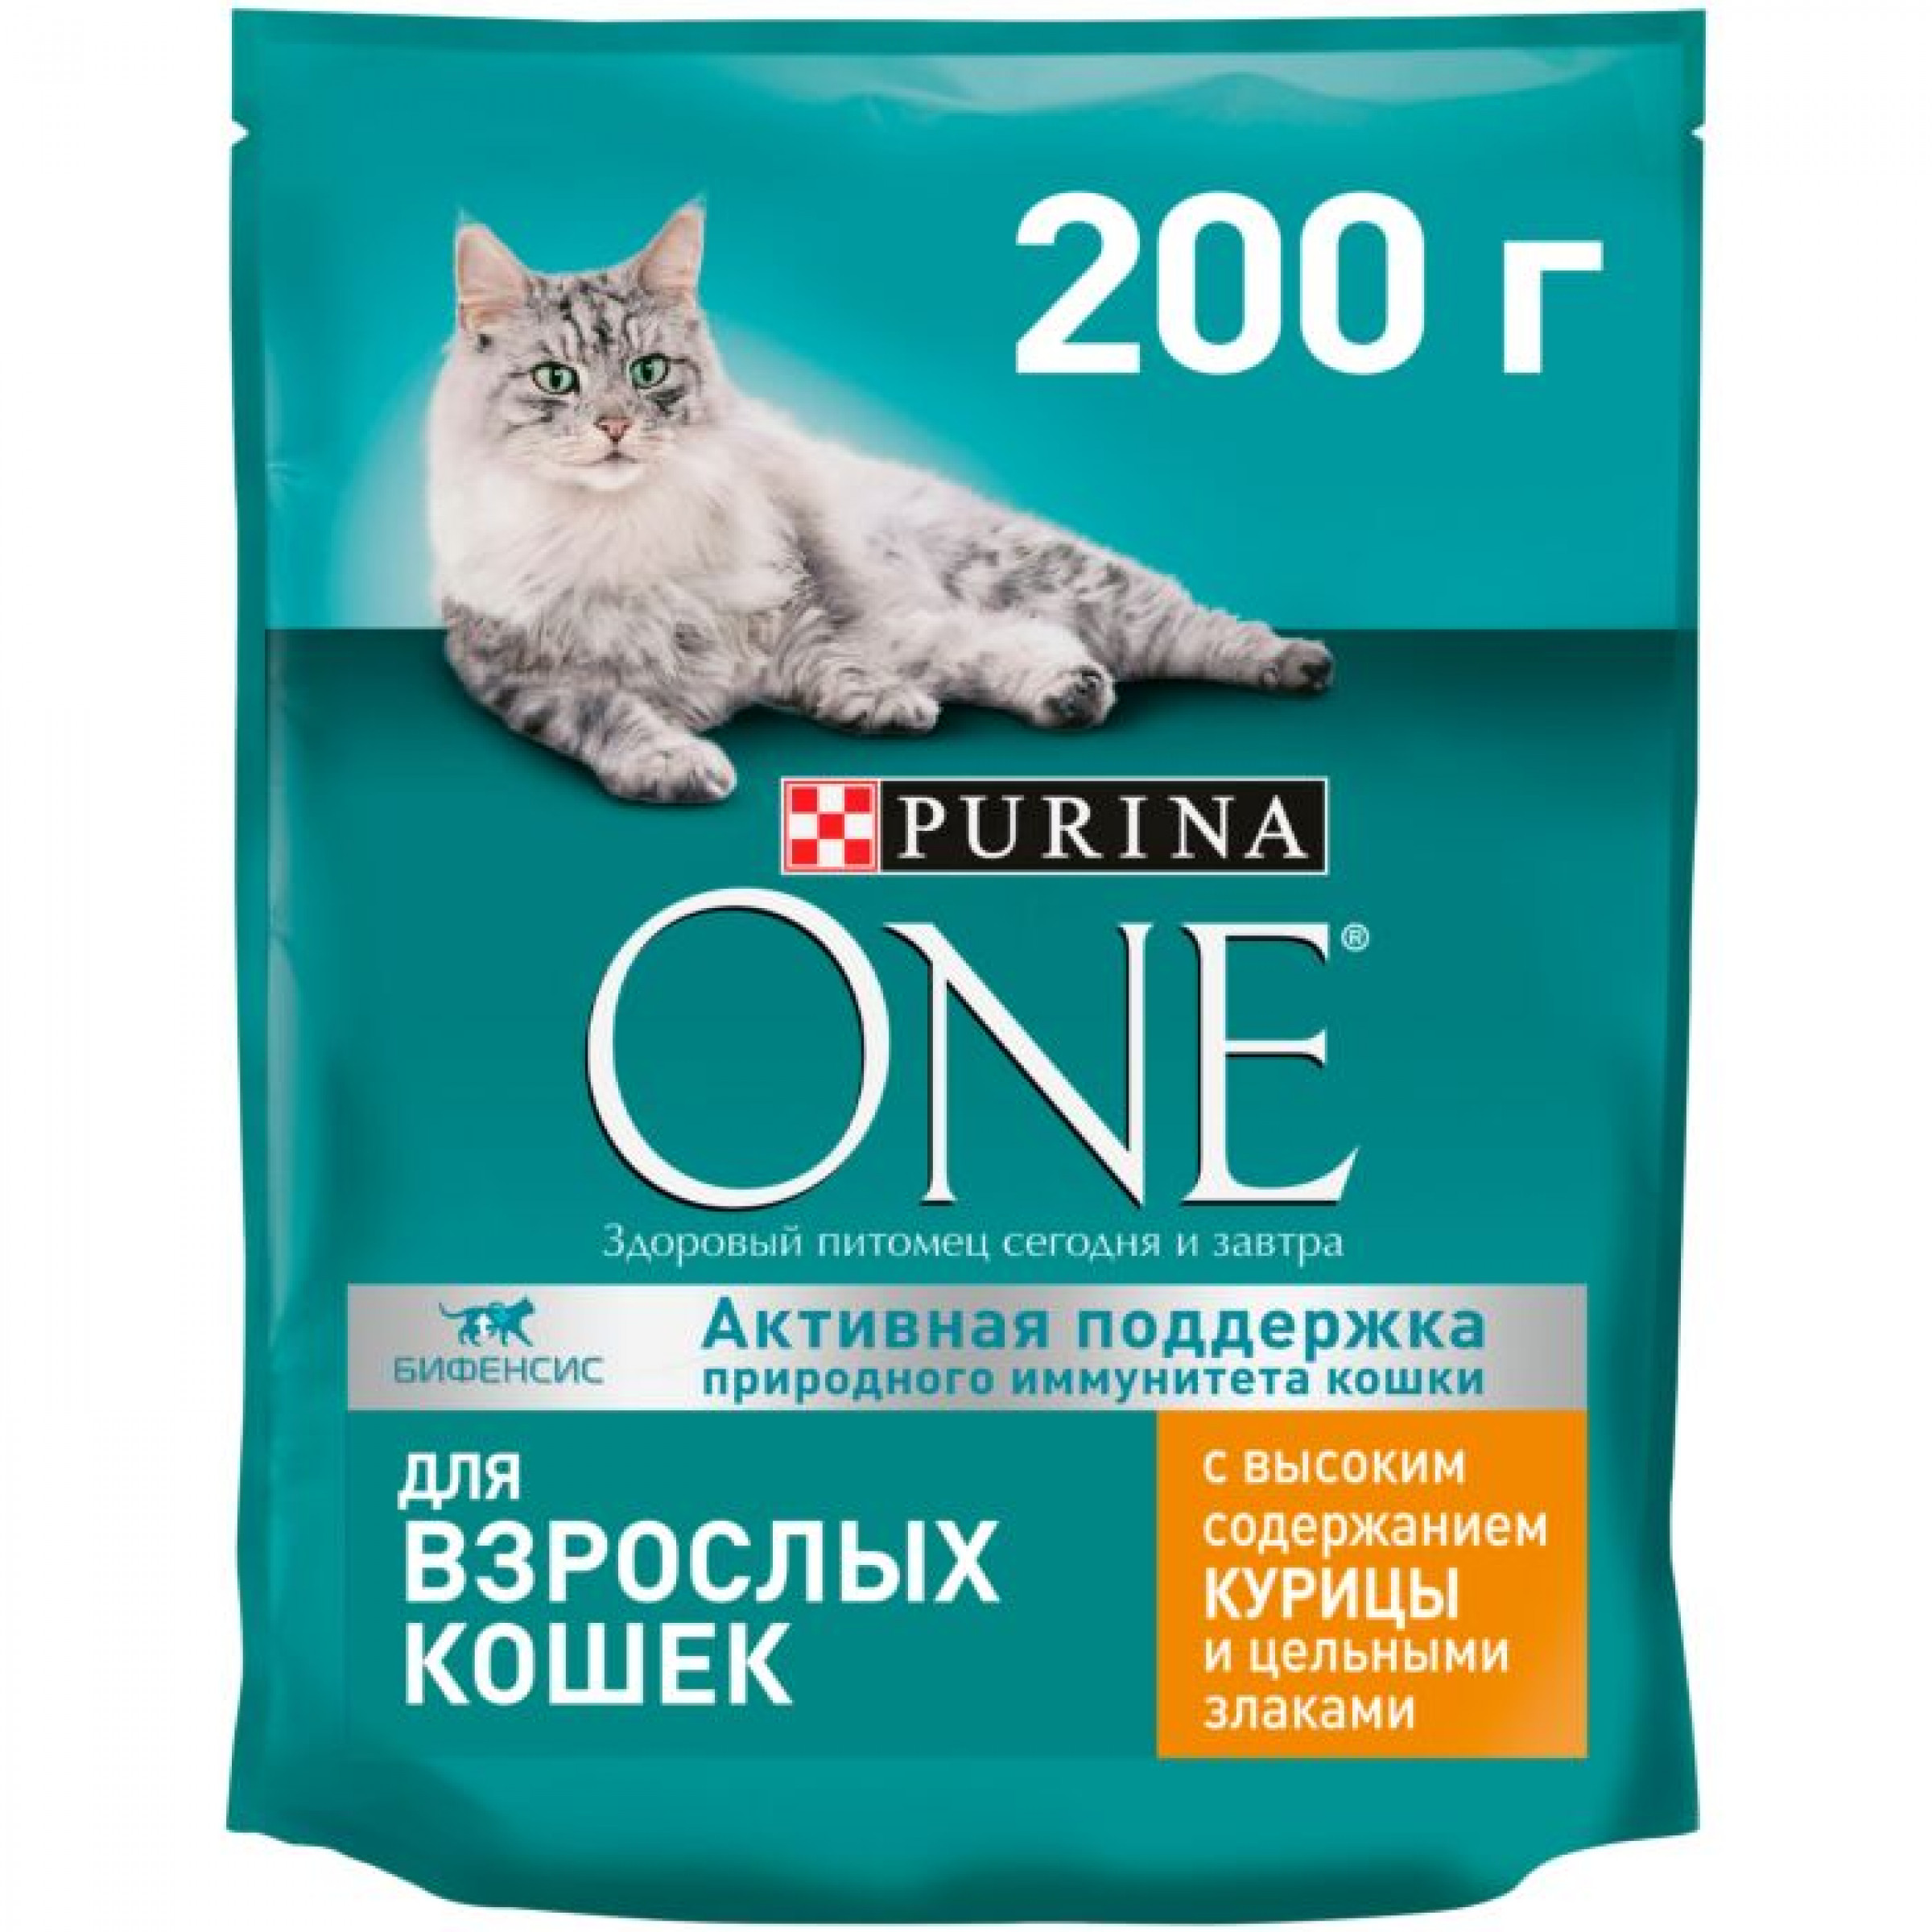 Сухой корм Purina One для взрослых кошек с курицей и цельными злаками, 200г